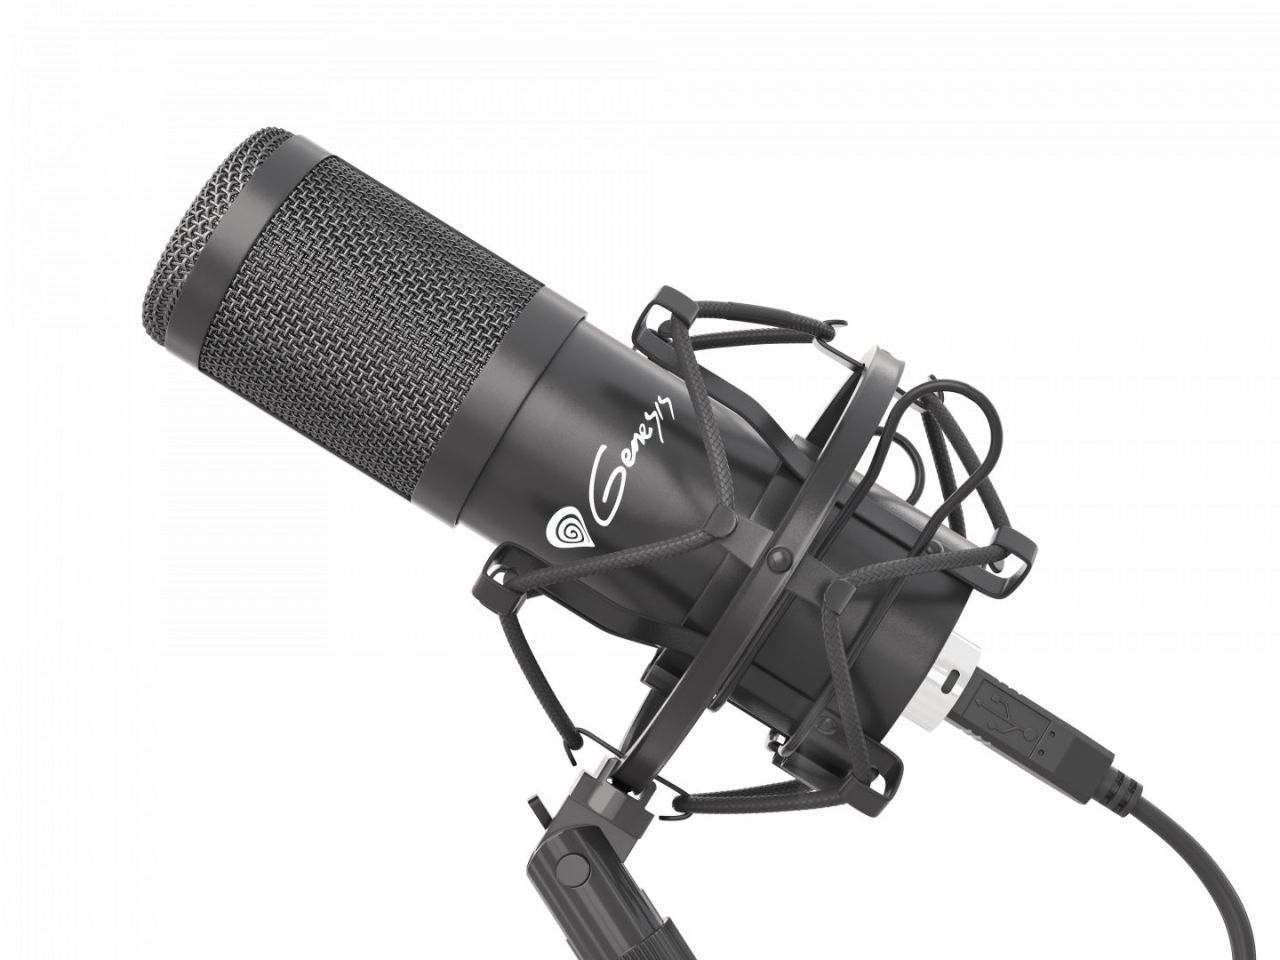 Natec Genesis Radium 400 Studio microphone Black